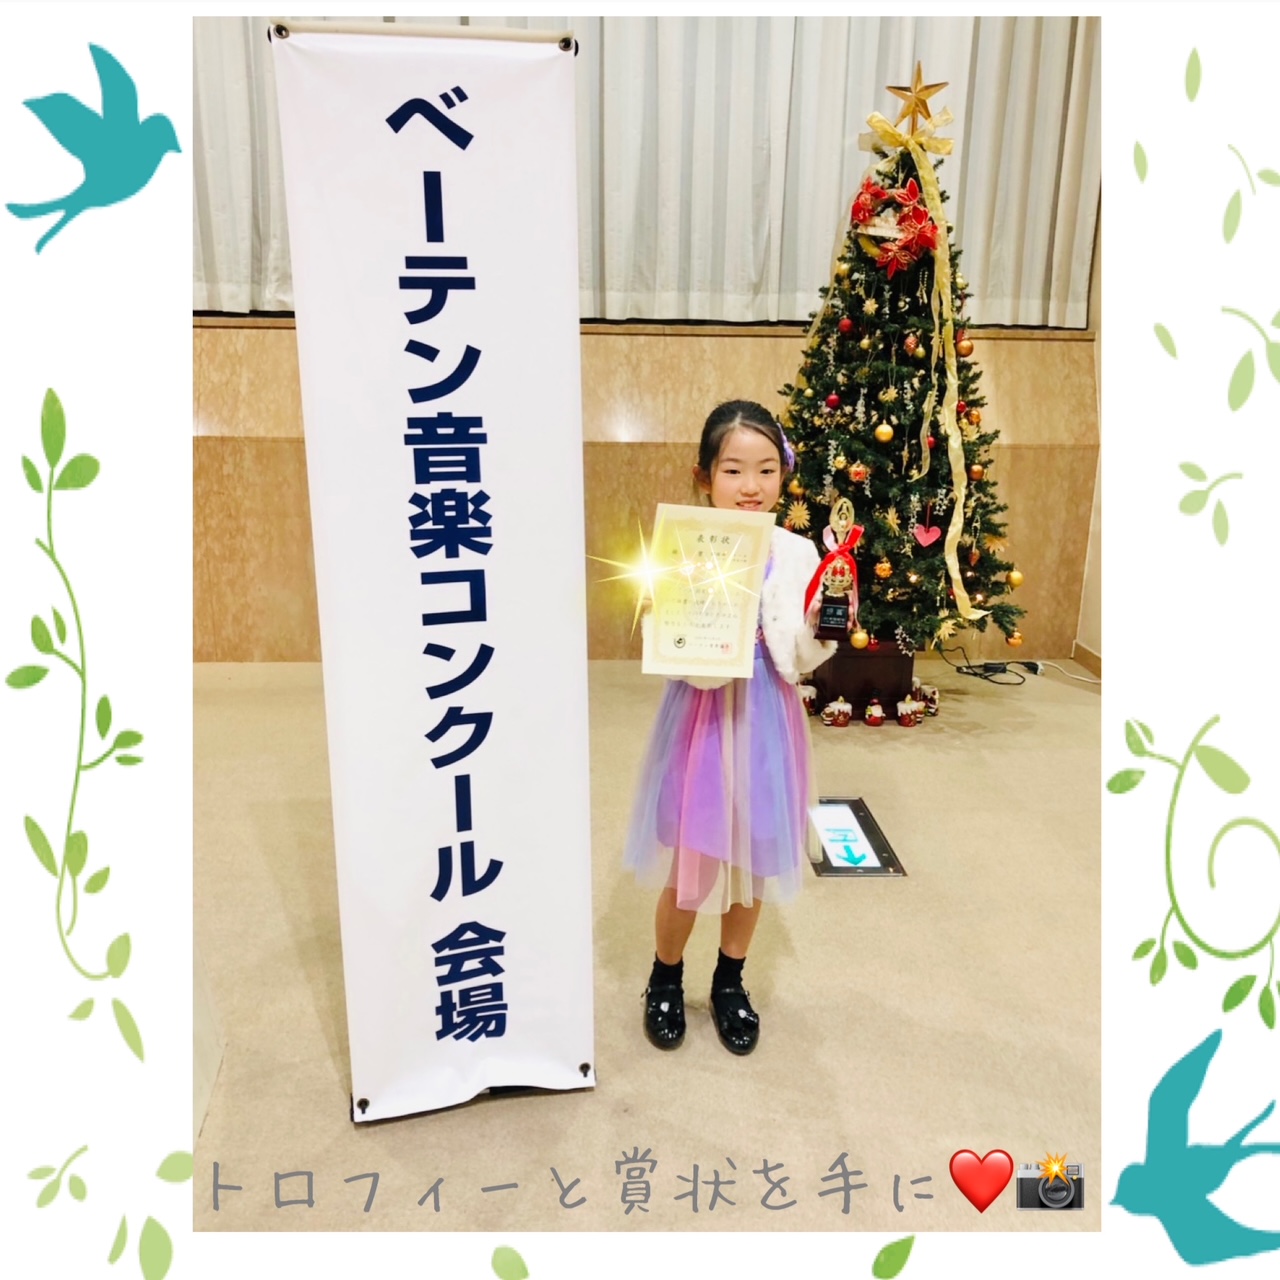 image34.JPG alt="Misuzu Music Houseの生徒さんが自身で立てた目標を達成しました！"